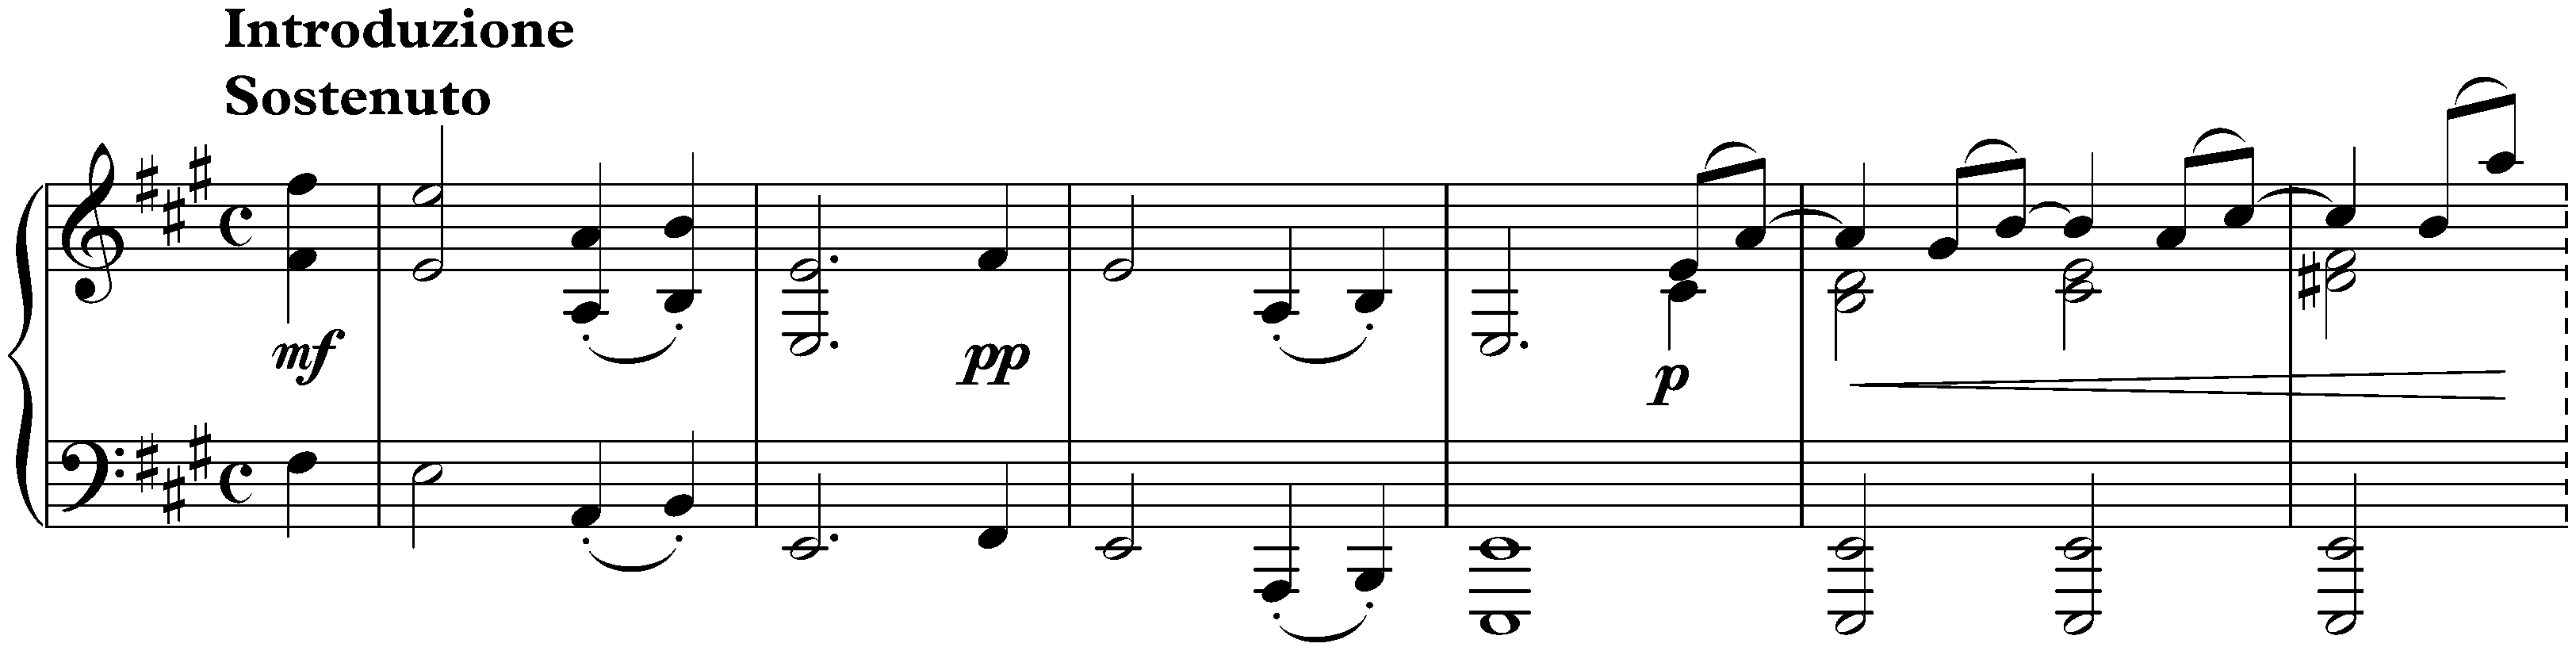 Sonata no. 2 in F-sharp minor, op. 2; 4. Finale: Introduzione: Sostenuto – Allegro non troppo e rubato